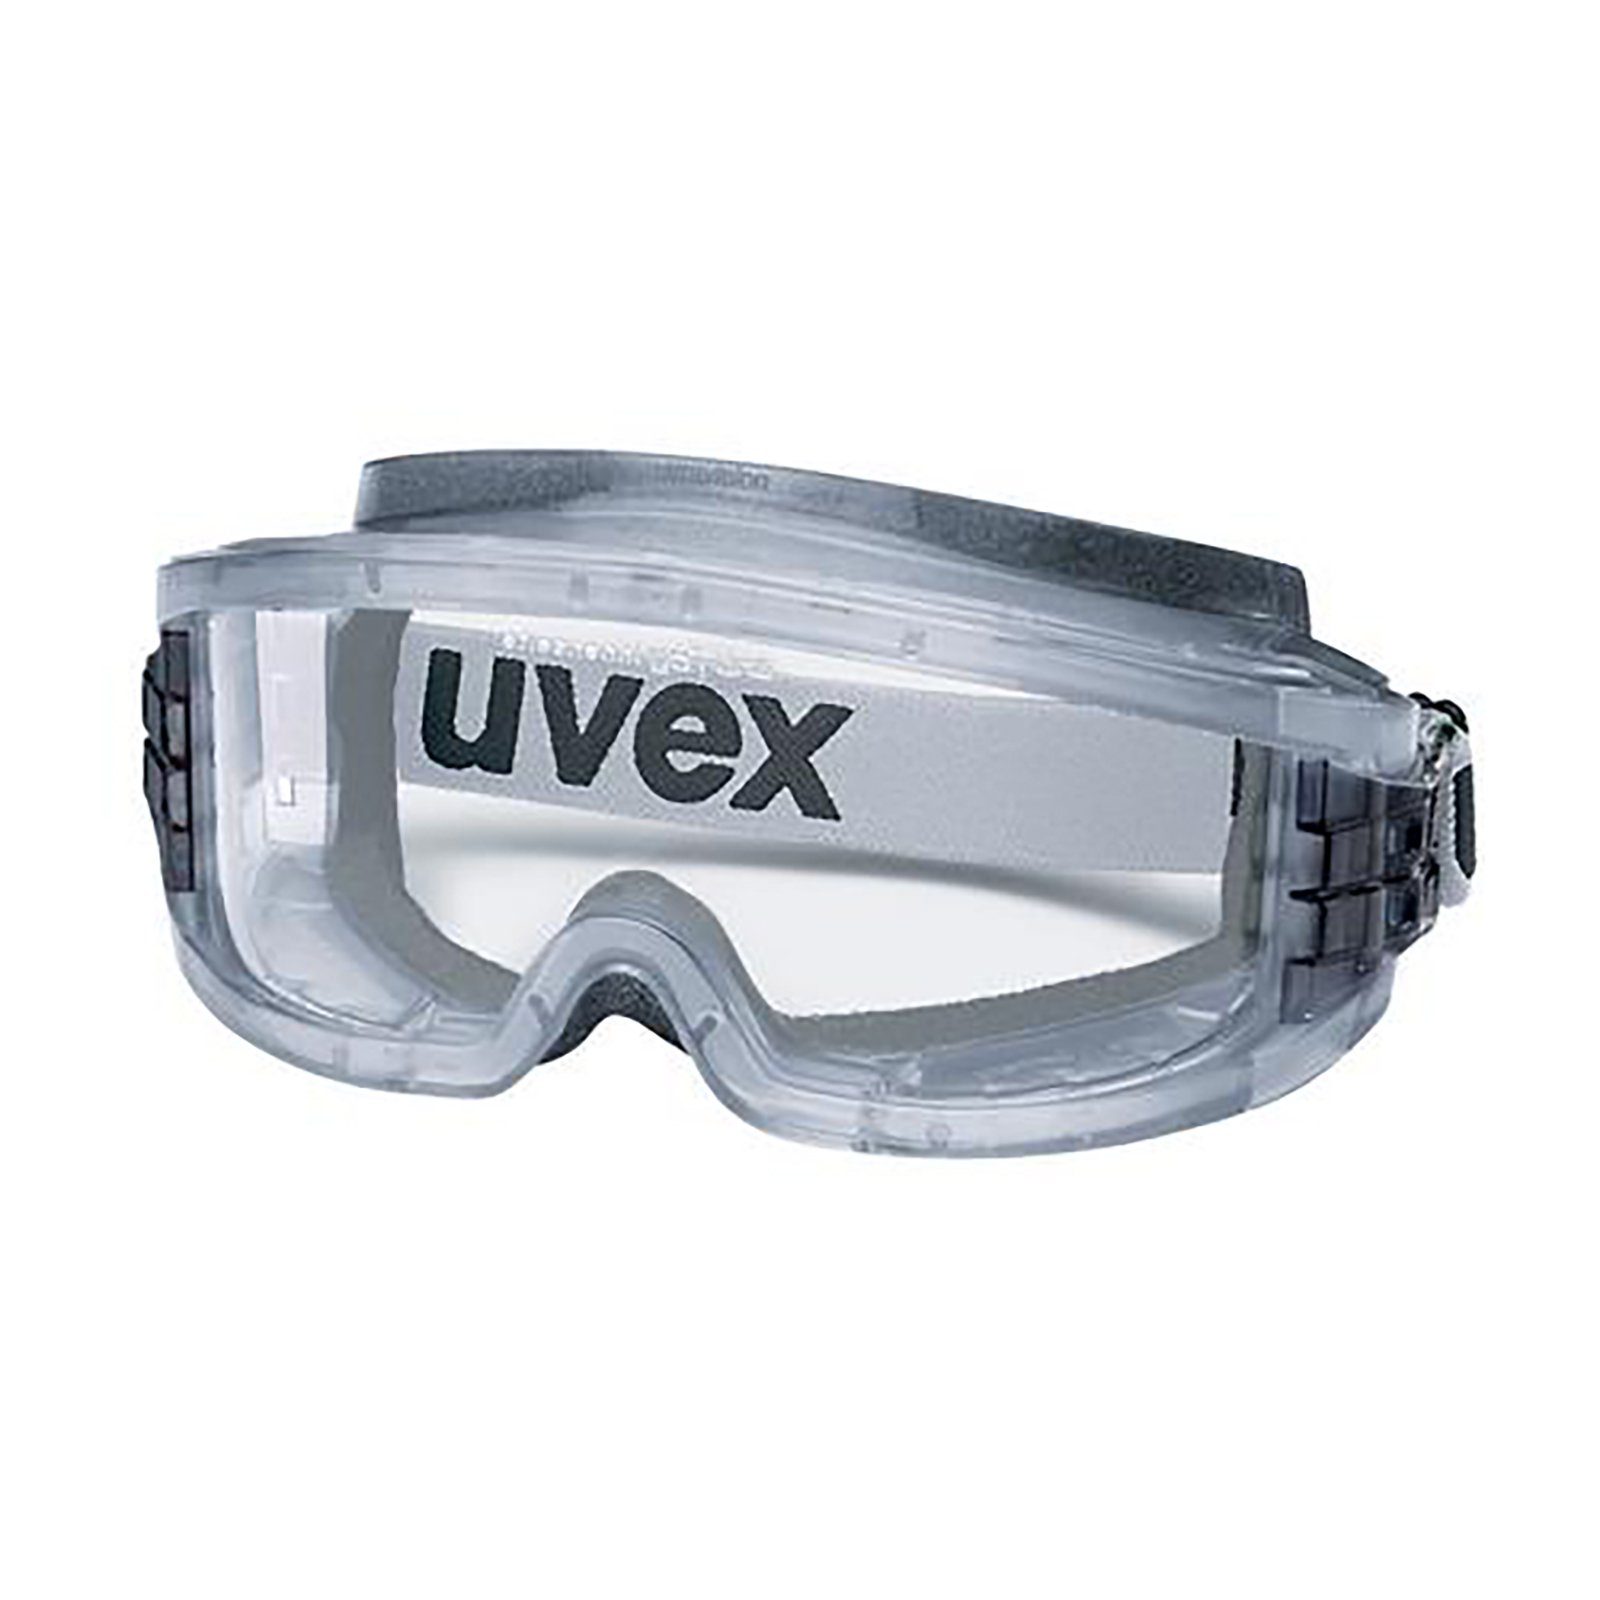 Uvex Arbeitsschutzbrille Vollsichtbrille sv plus 9301116 ultravision